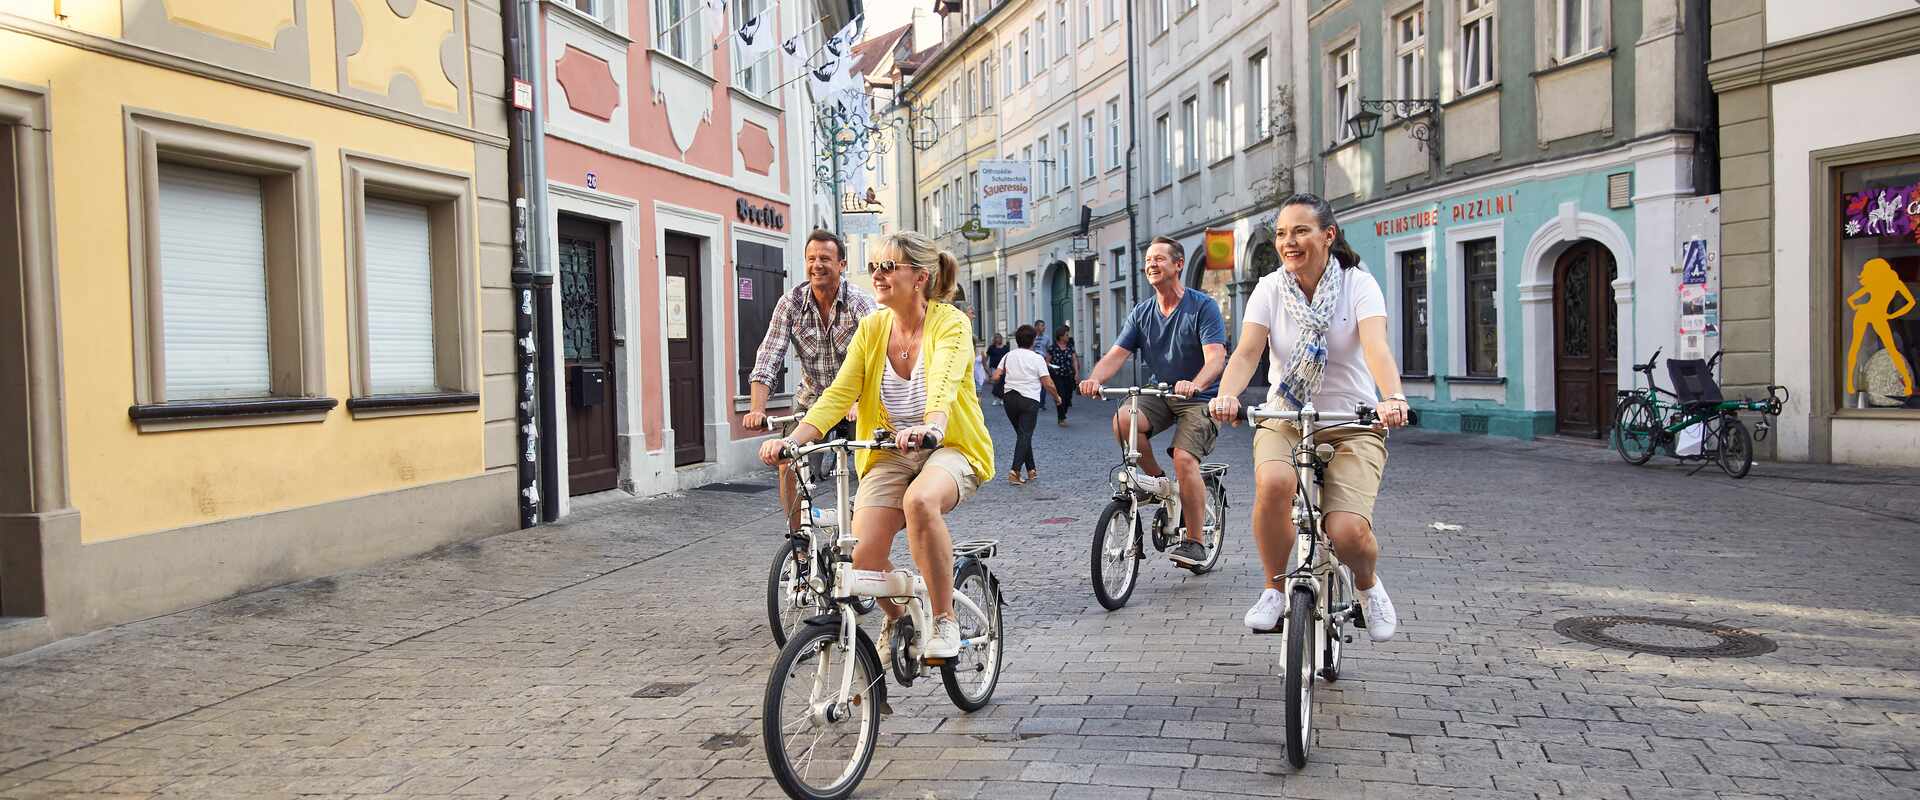 street view bike riding passengers bamberg, europe